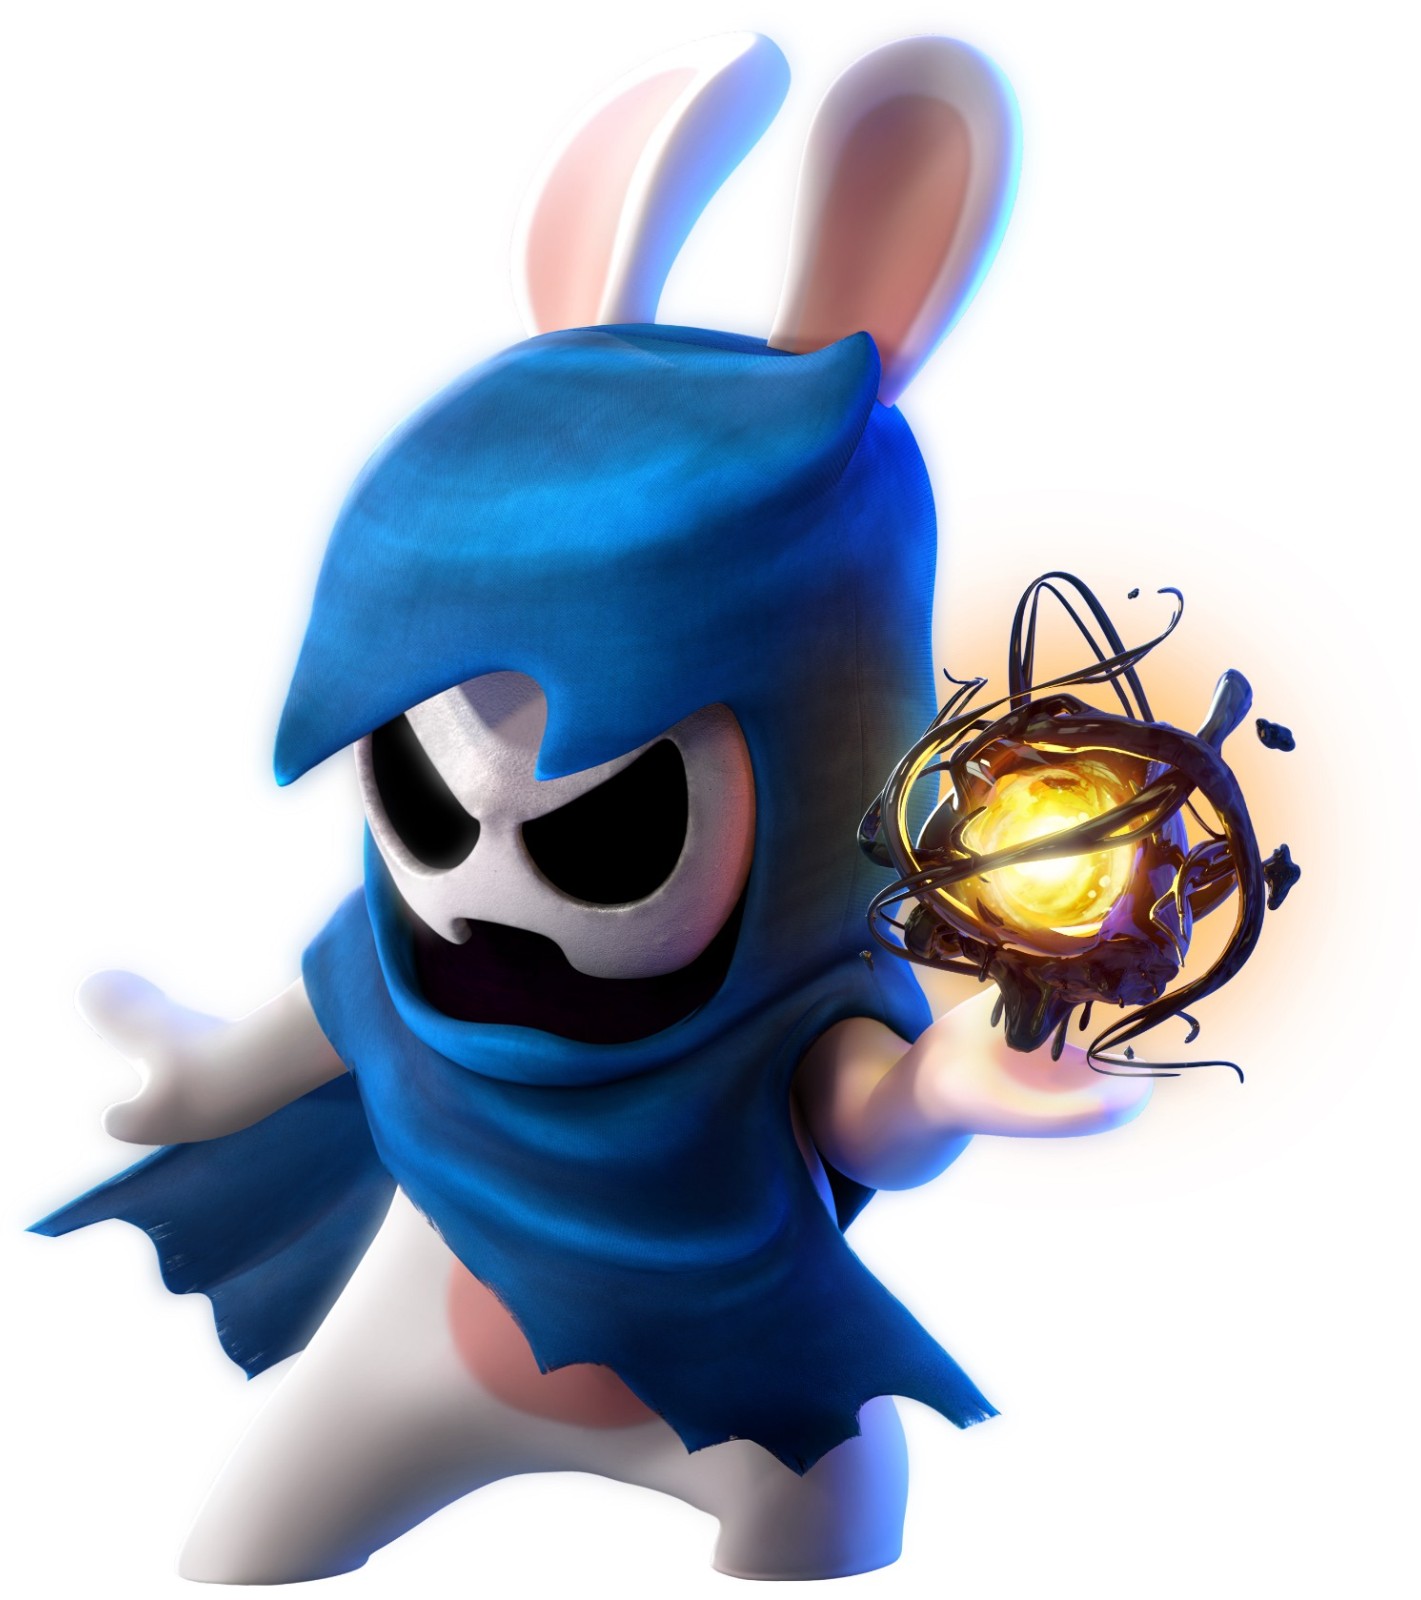 育碧发布《马力欧+疯狂兔子：星耀之愿》新艺术图 10月20日发售